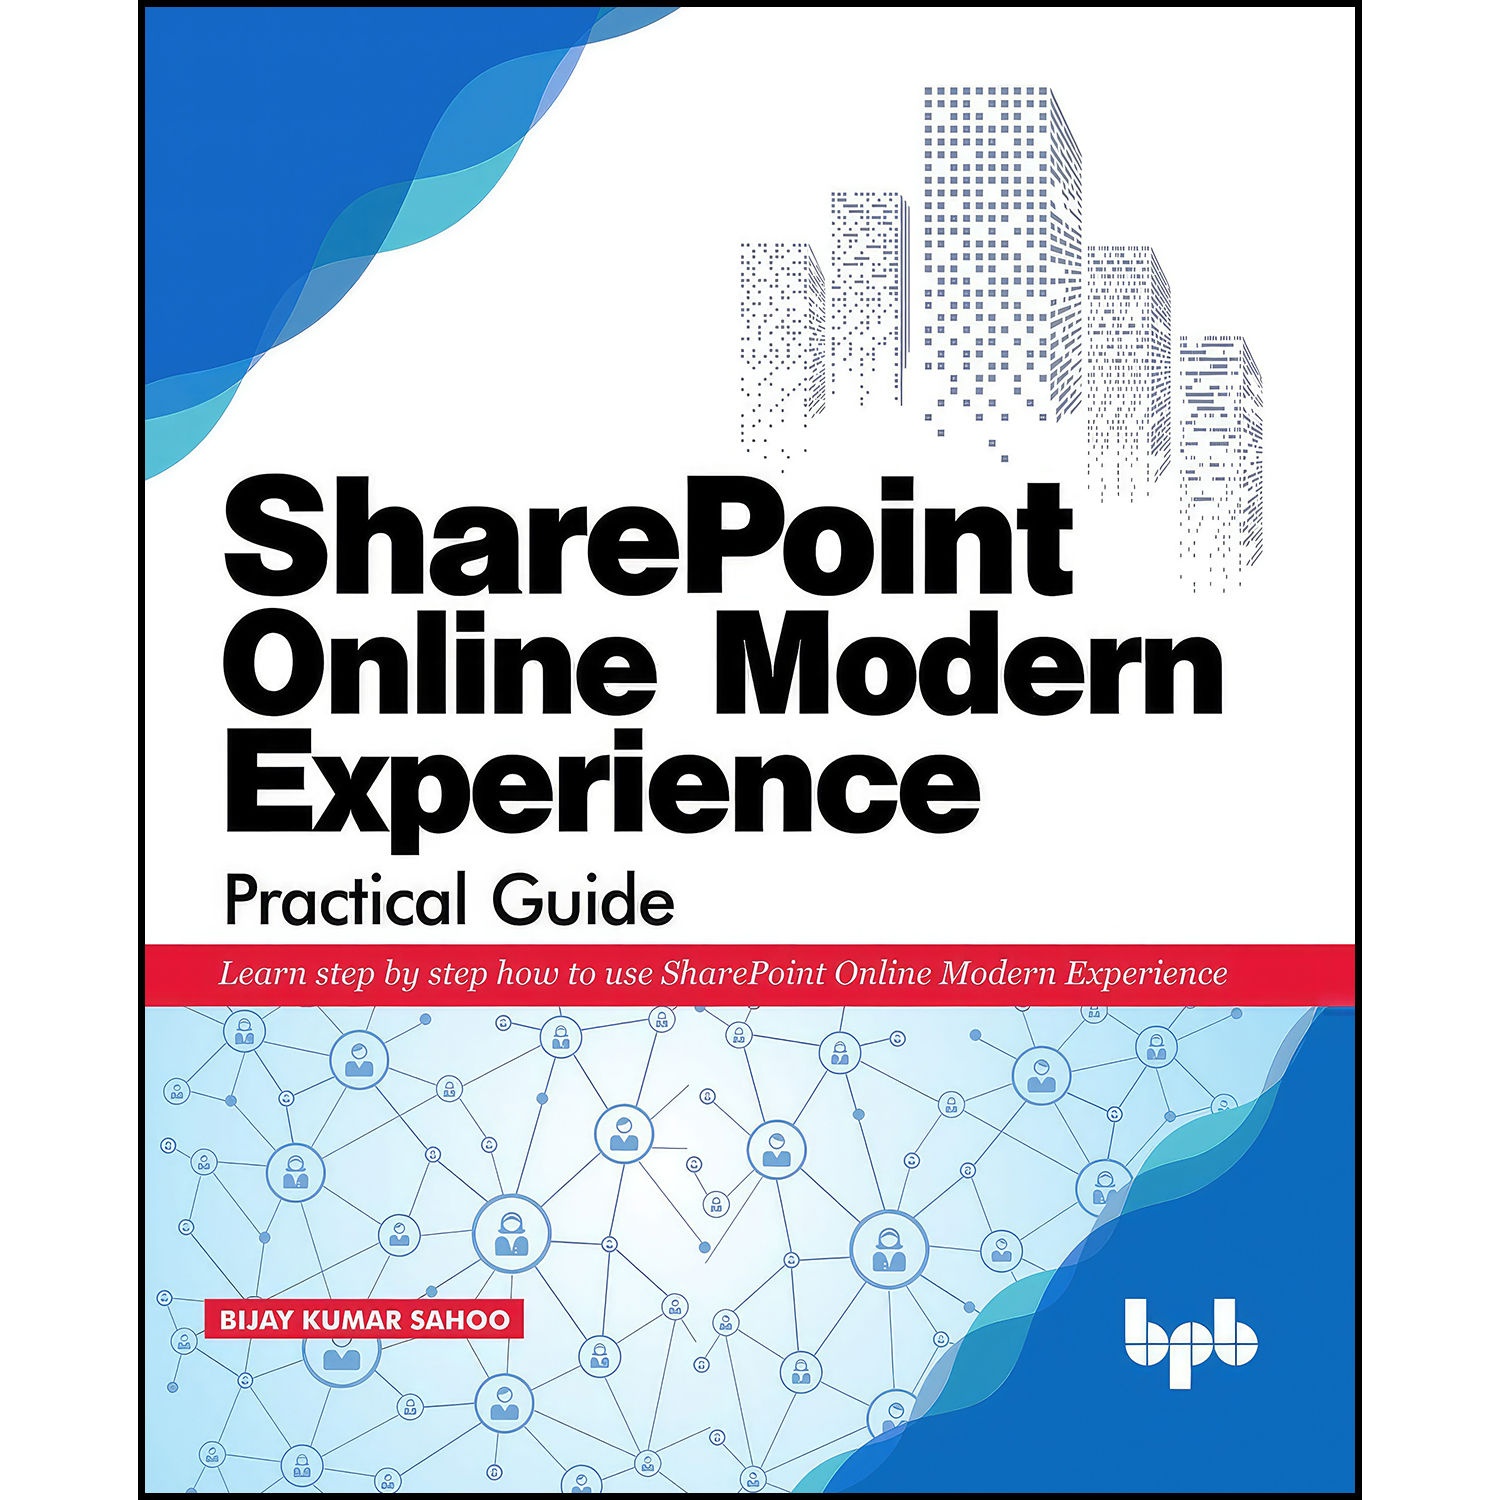 کتاب SharePoint Online Modern Experience Practical Guide اثر جمعي از نويسندگان انتشارات بله